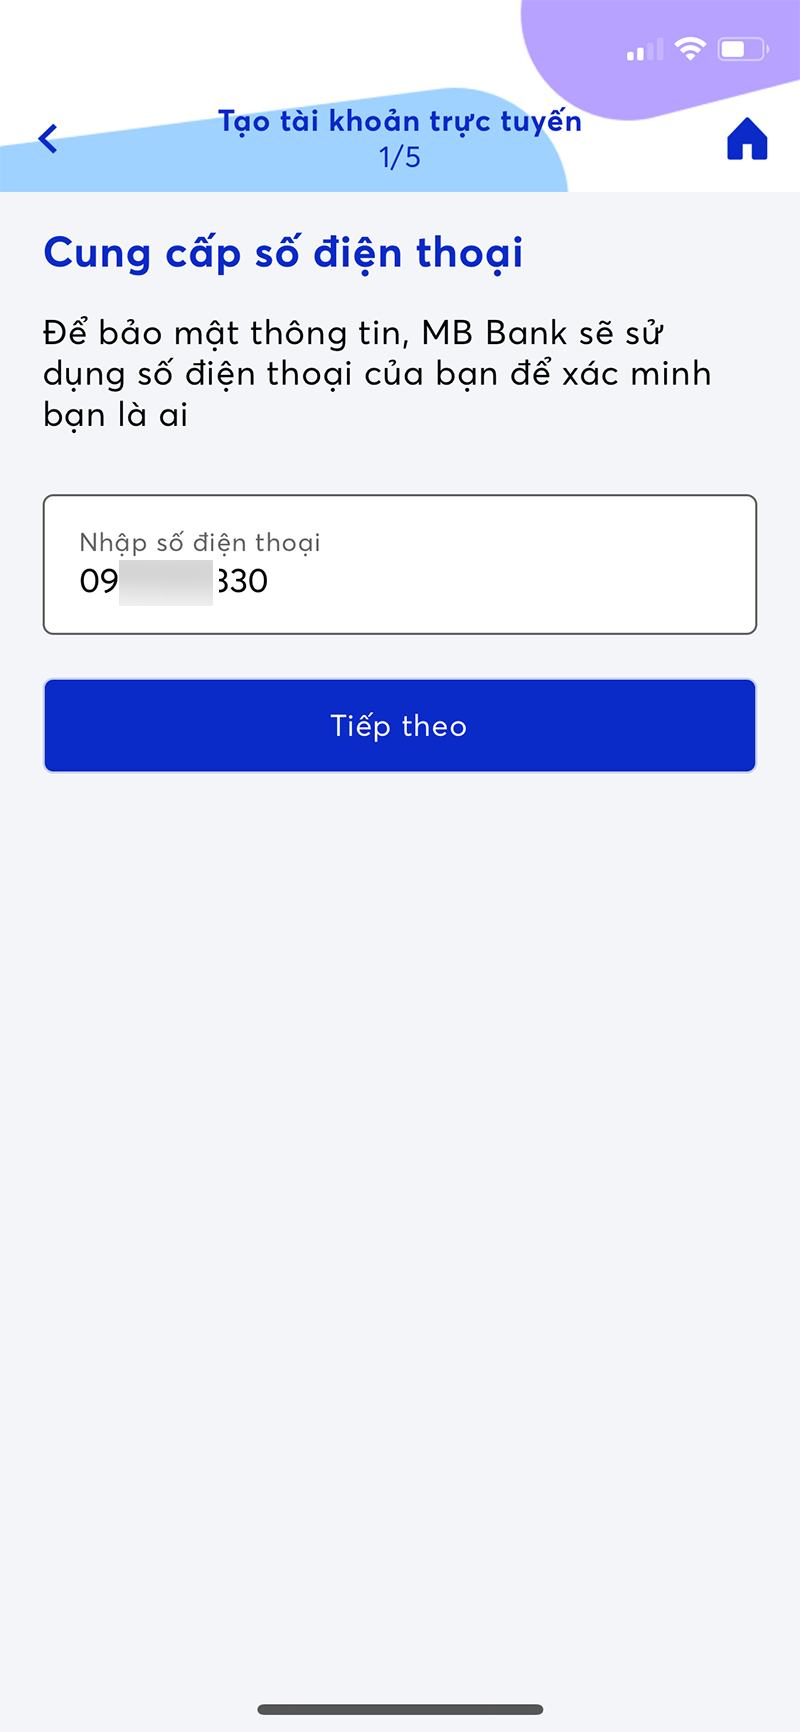 Cách đăng ký chuyển tiền MBBank trên app 1